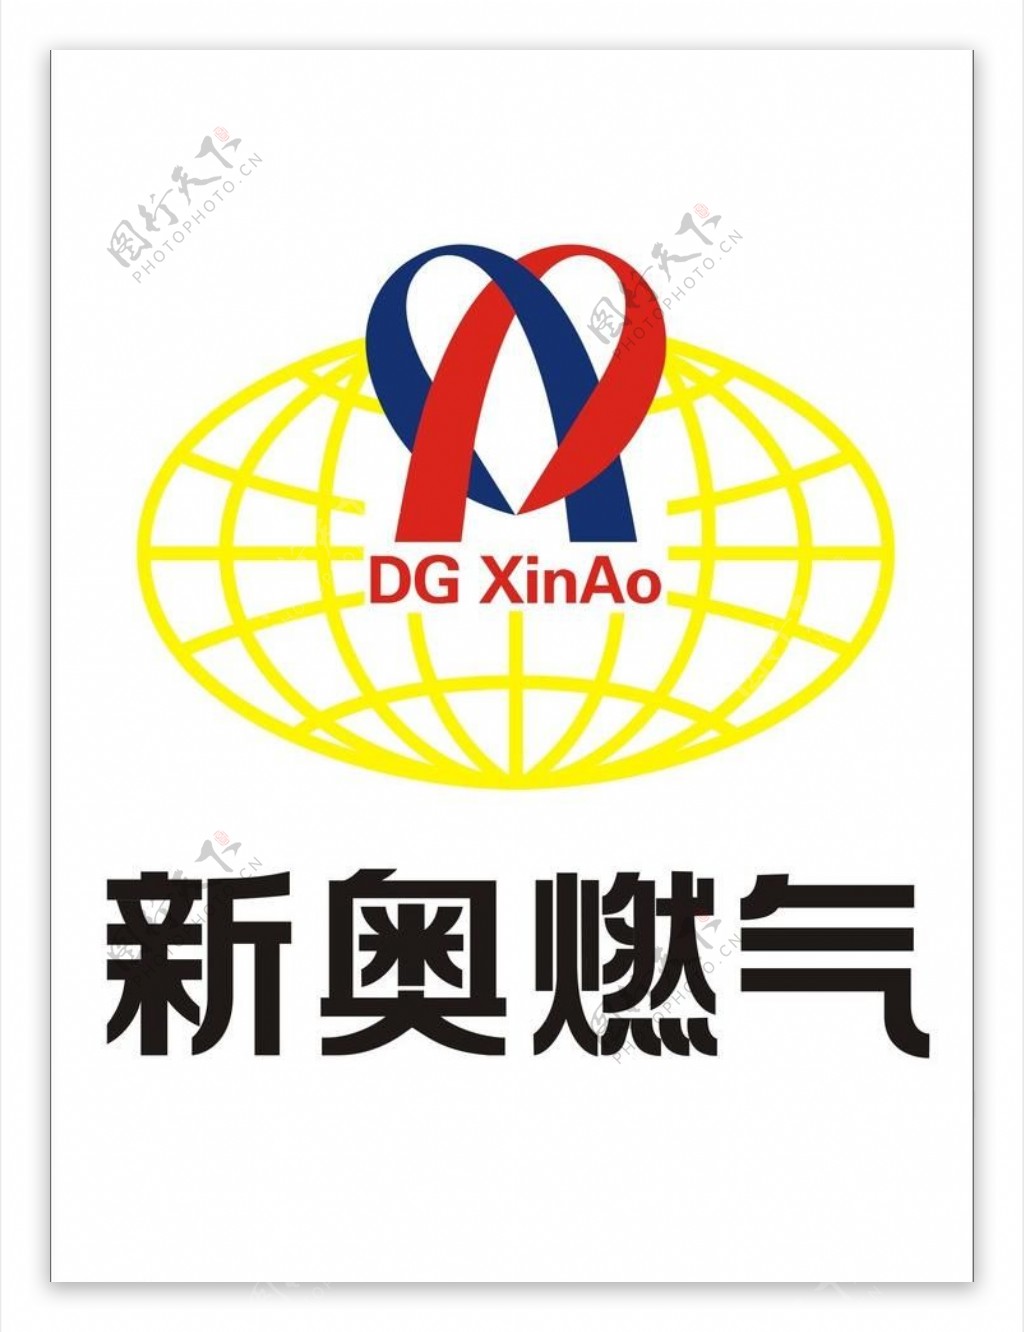 新奥燃气logo图片